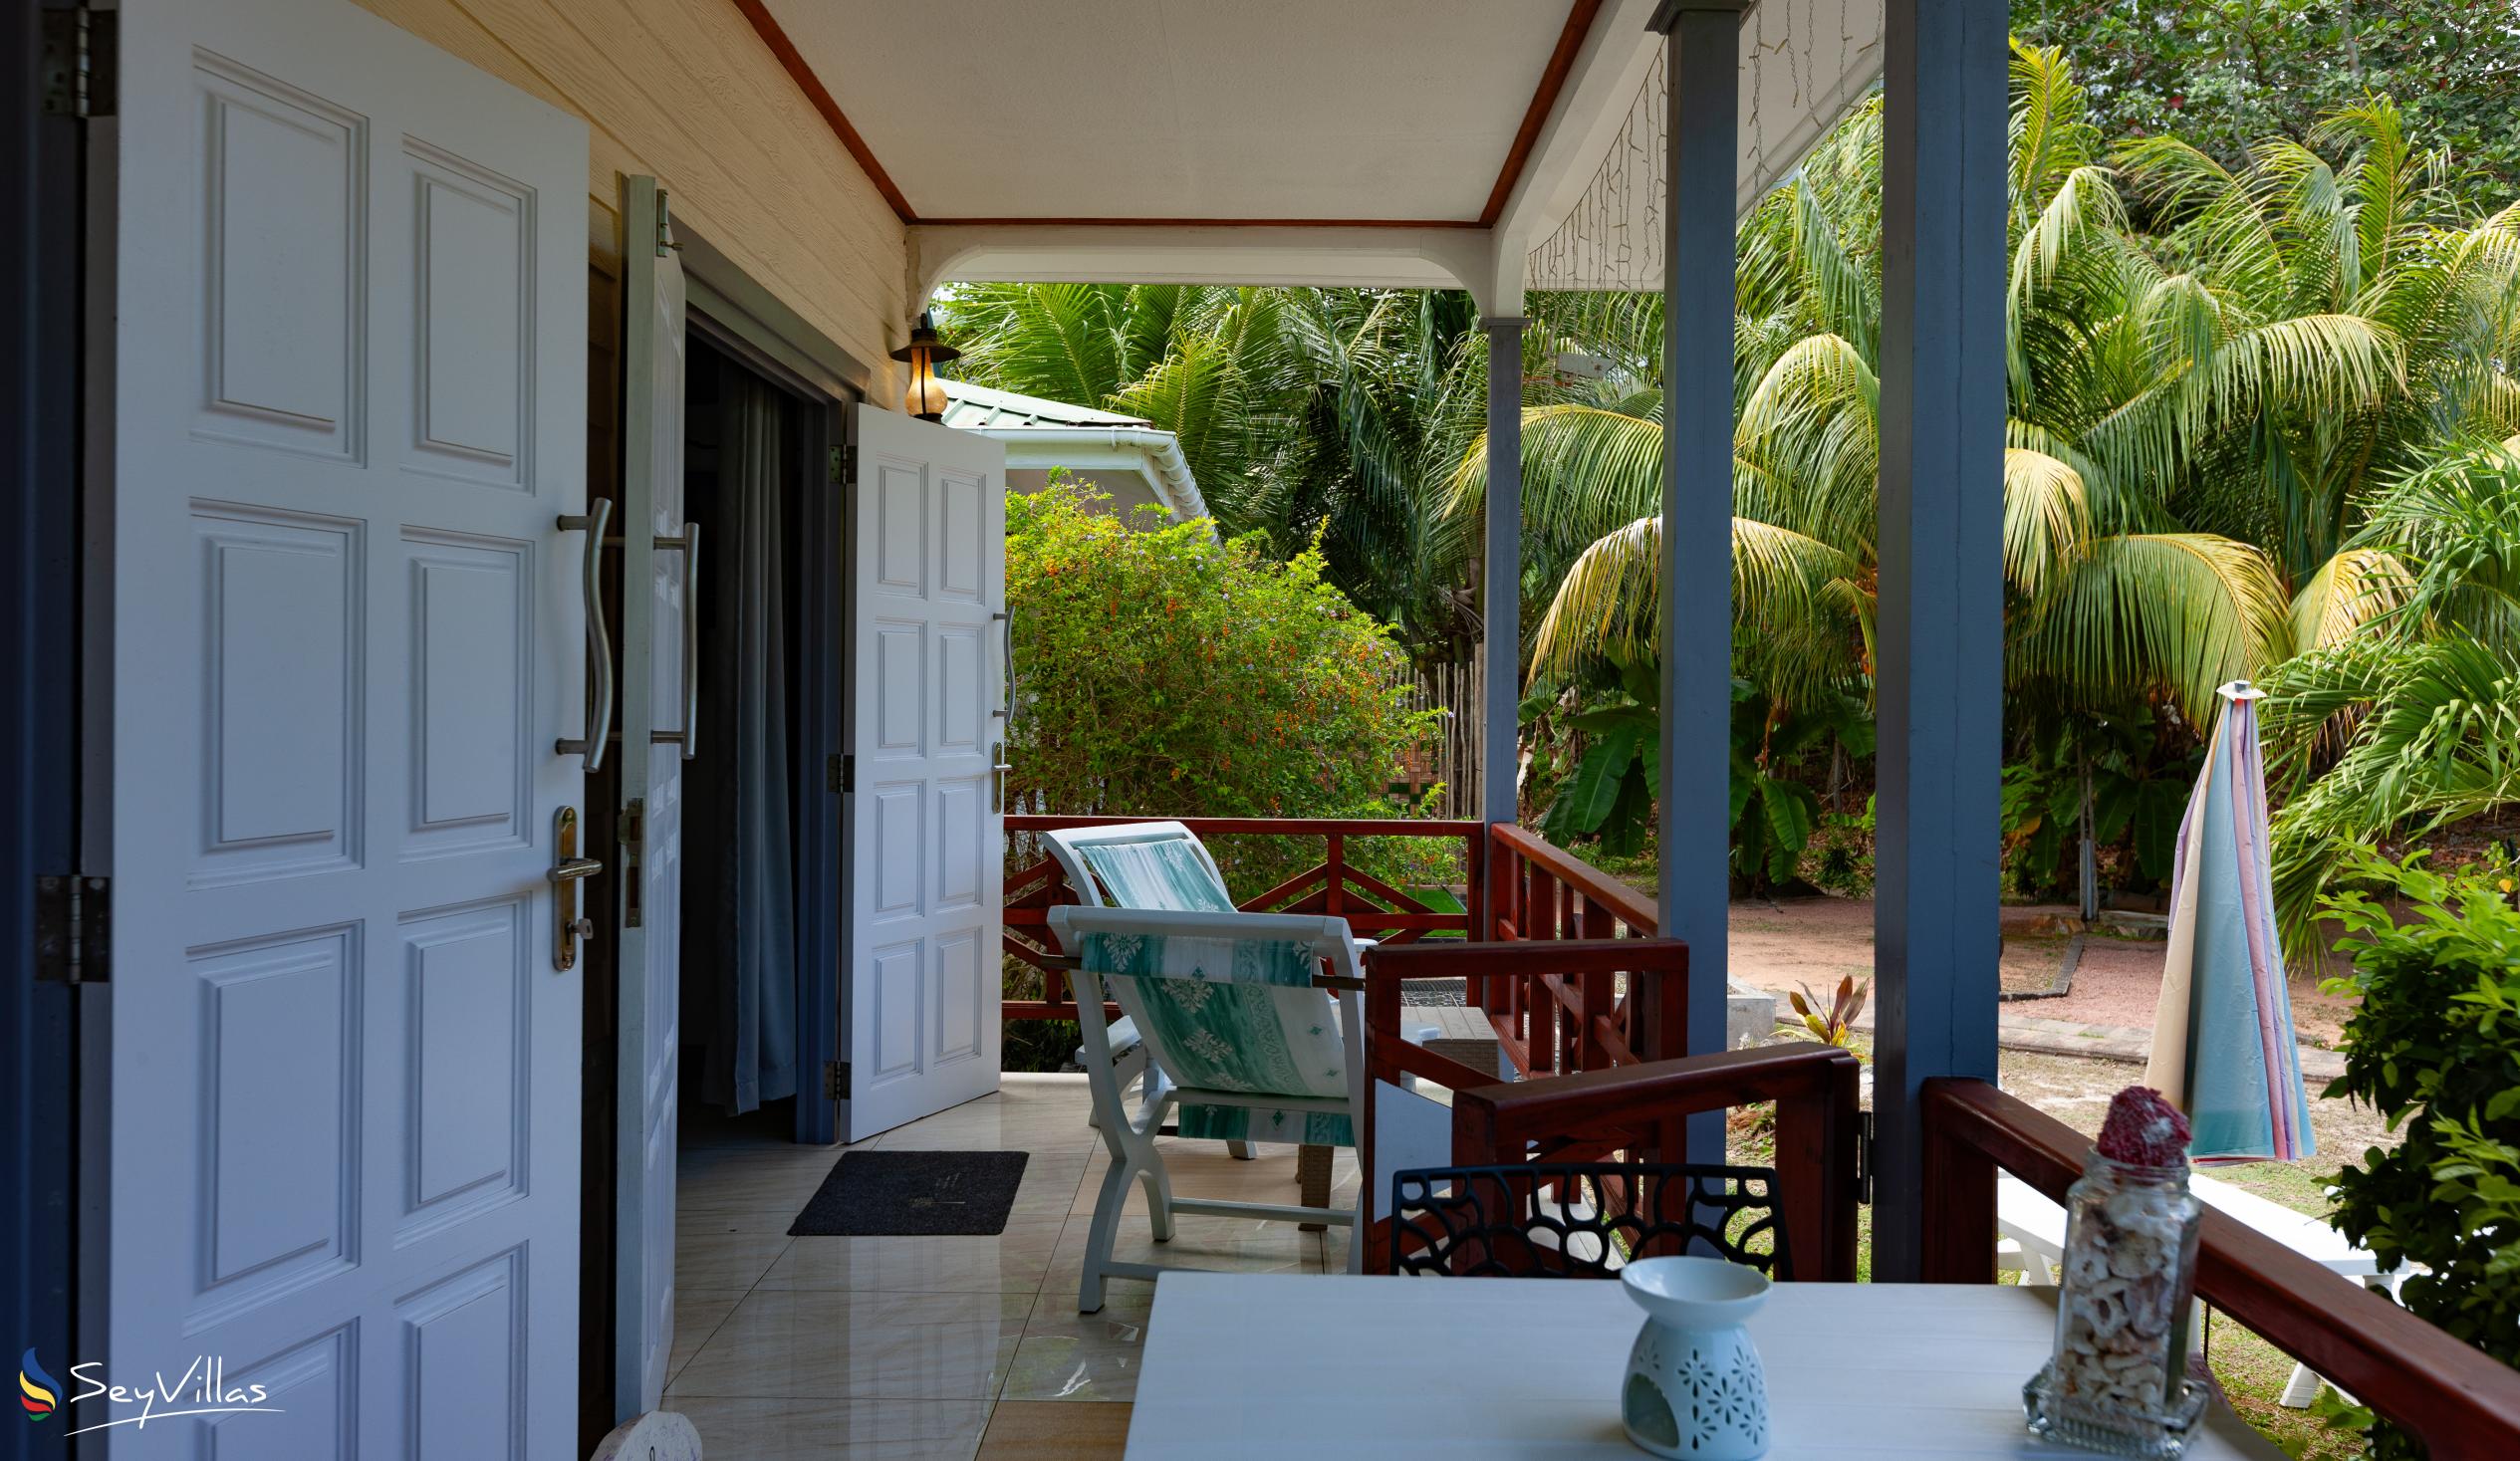 Photo 60: Agnes Cottage - Sapphire House - La Digue (Seychelles)